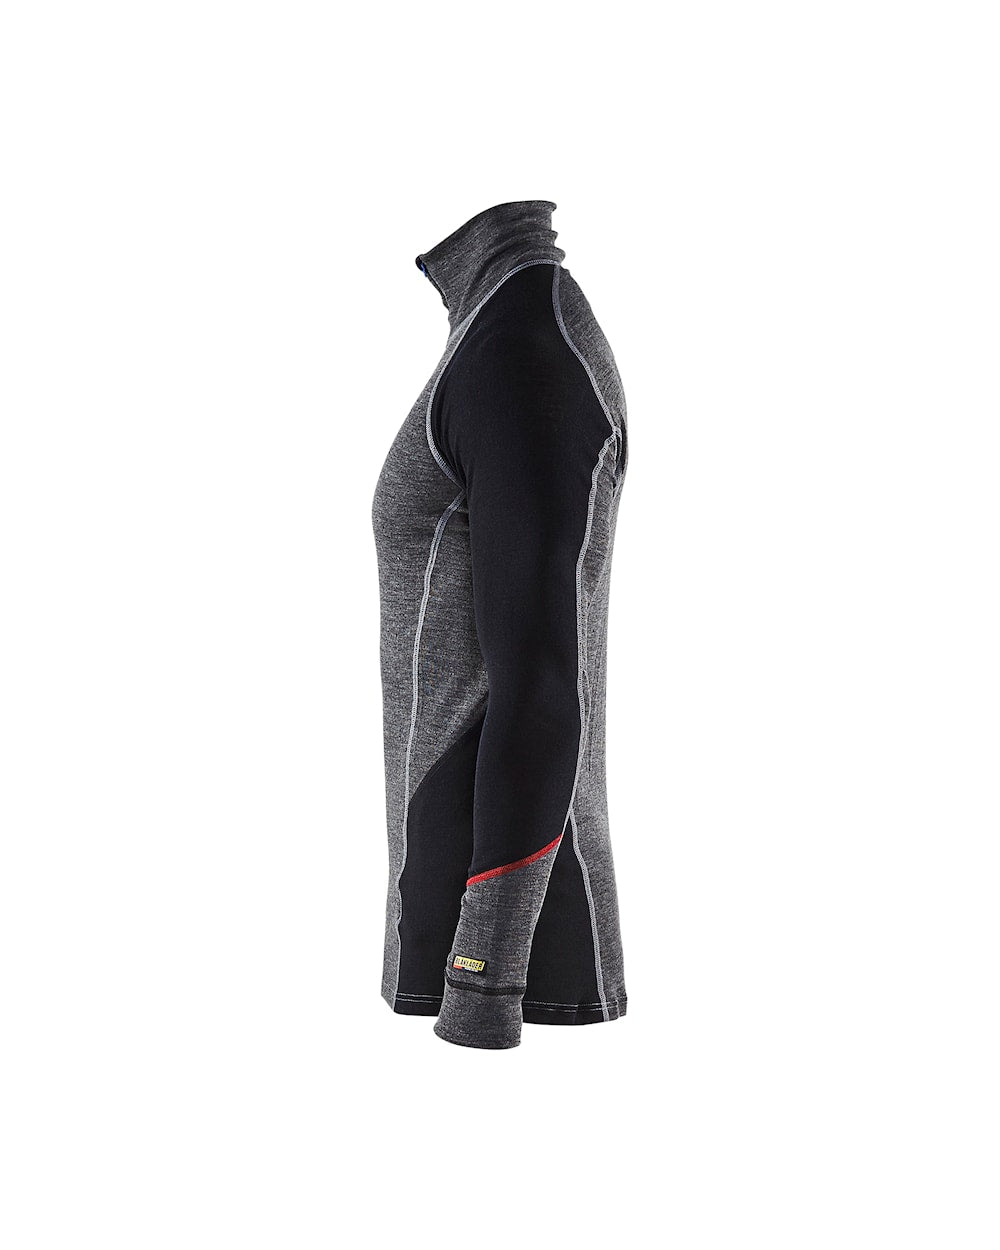 Blaklader Underwear Zip-Neck Top Xwarm, 100% Merino 4699 #colour_mid-grey-black